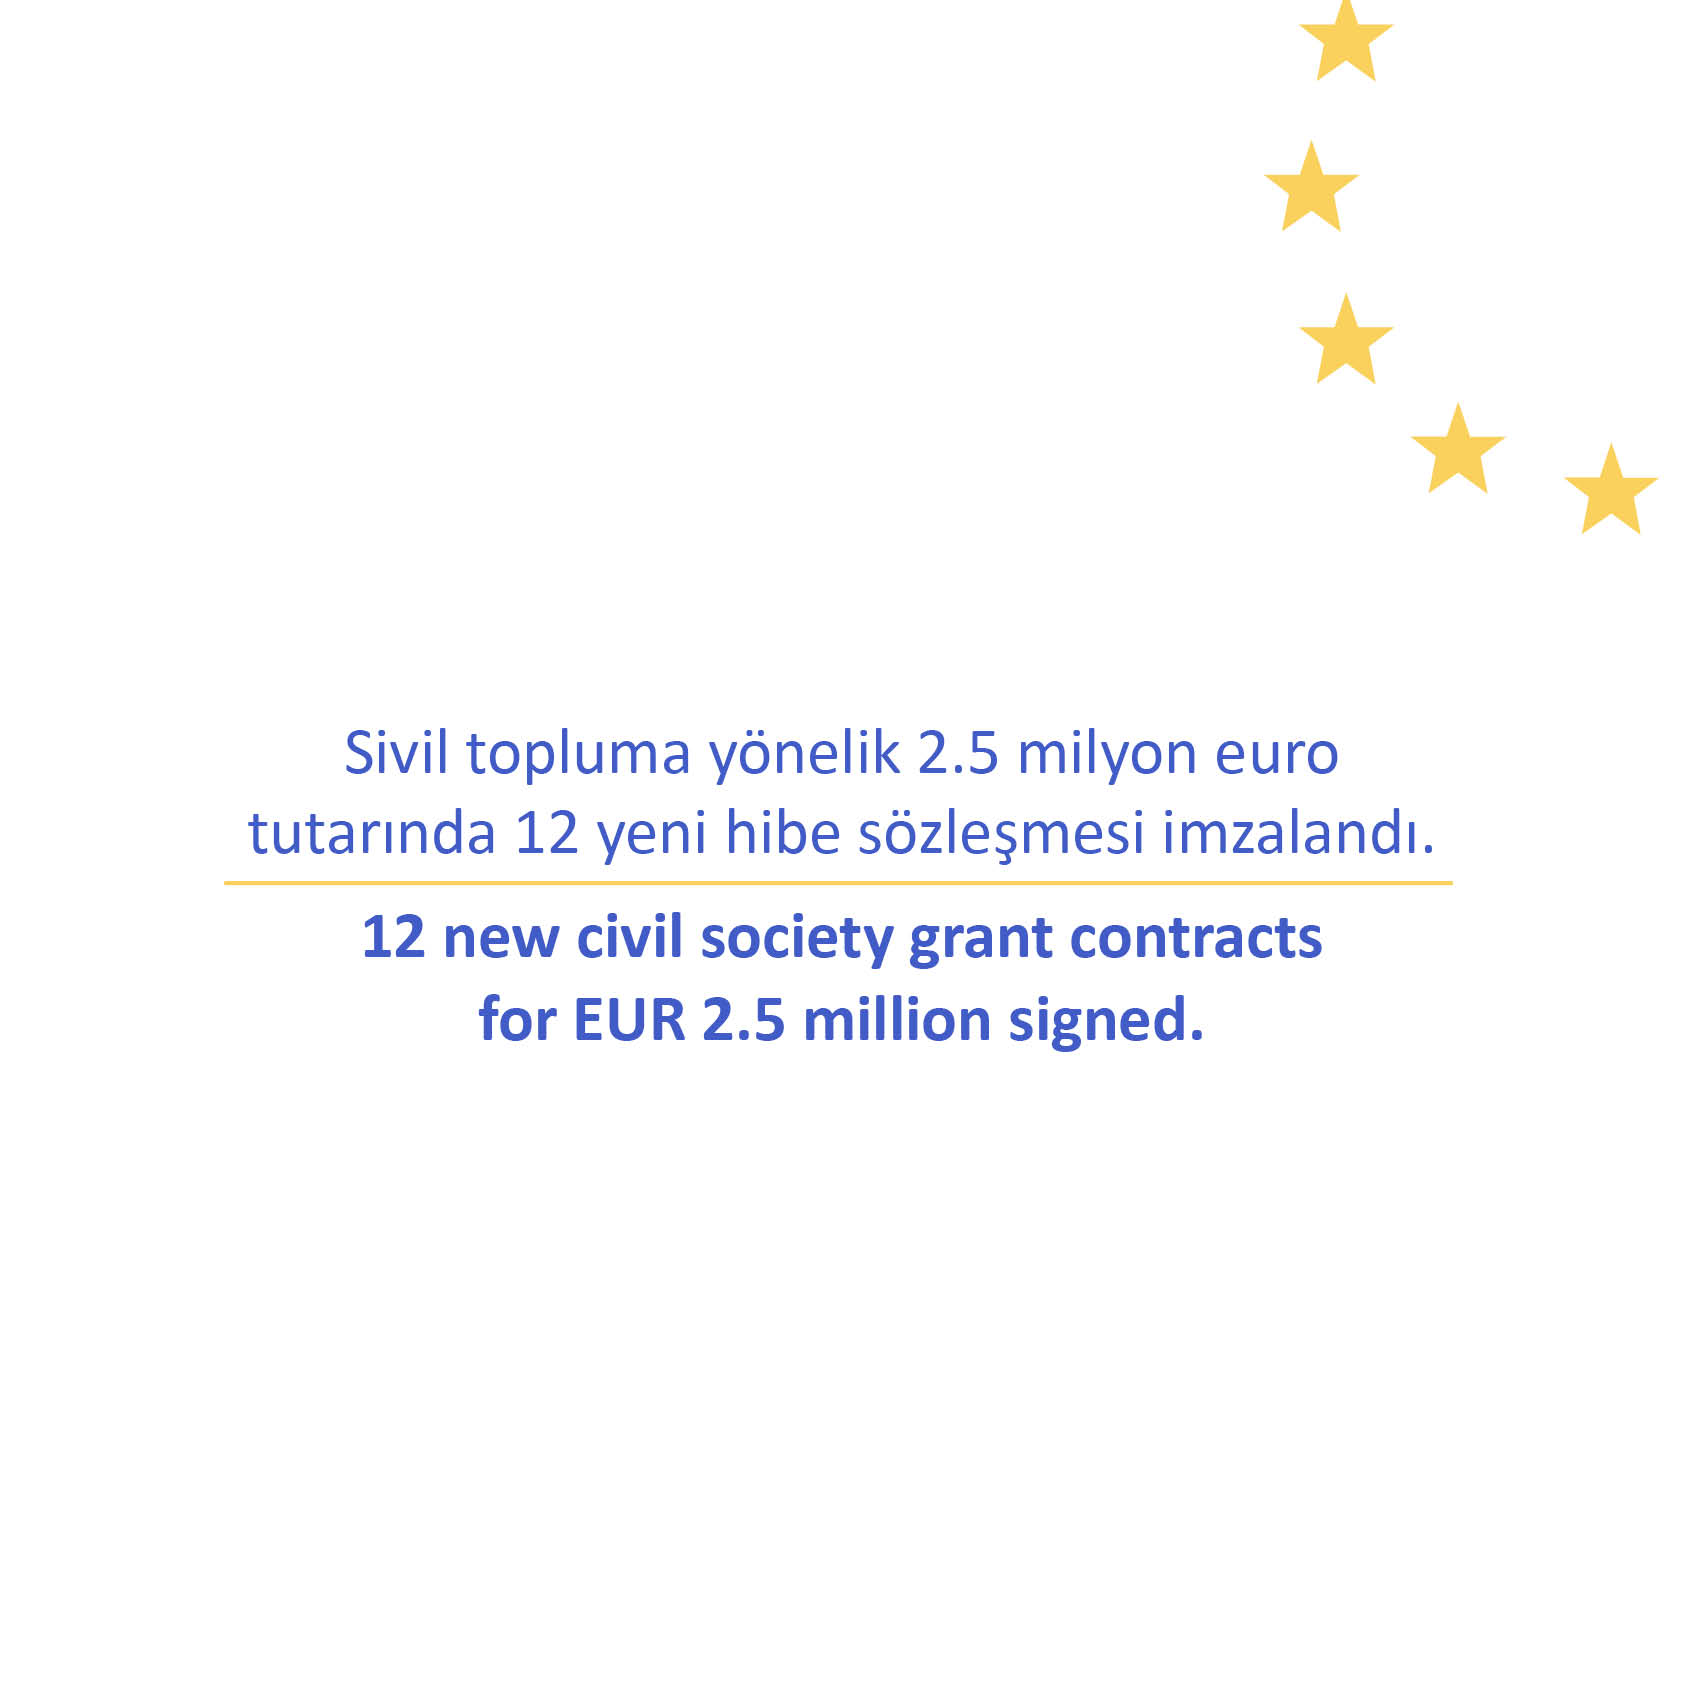 Sivil topluma yönelik 2.5 milyon euro tutarında 12 yeni hibe sözleşmesi imzalandı